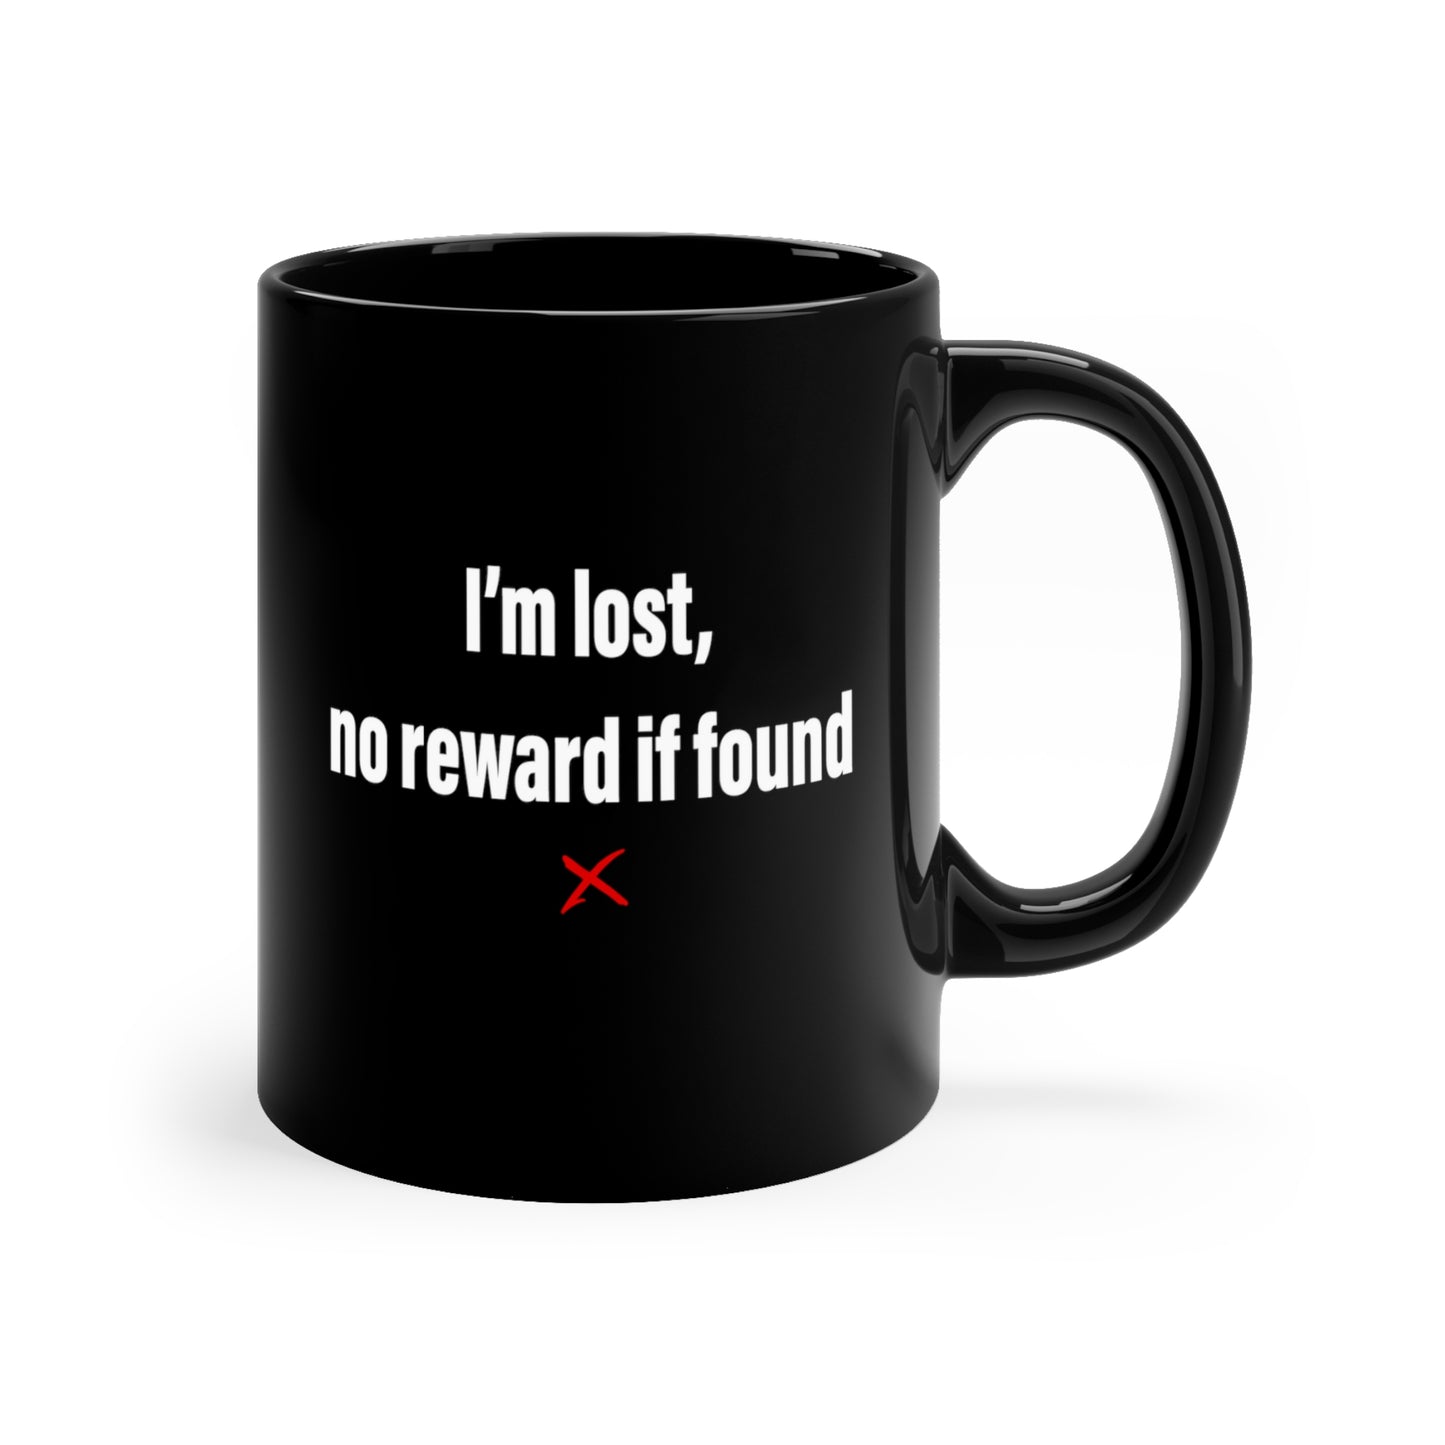 I'm lost, no reward if found - Mug